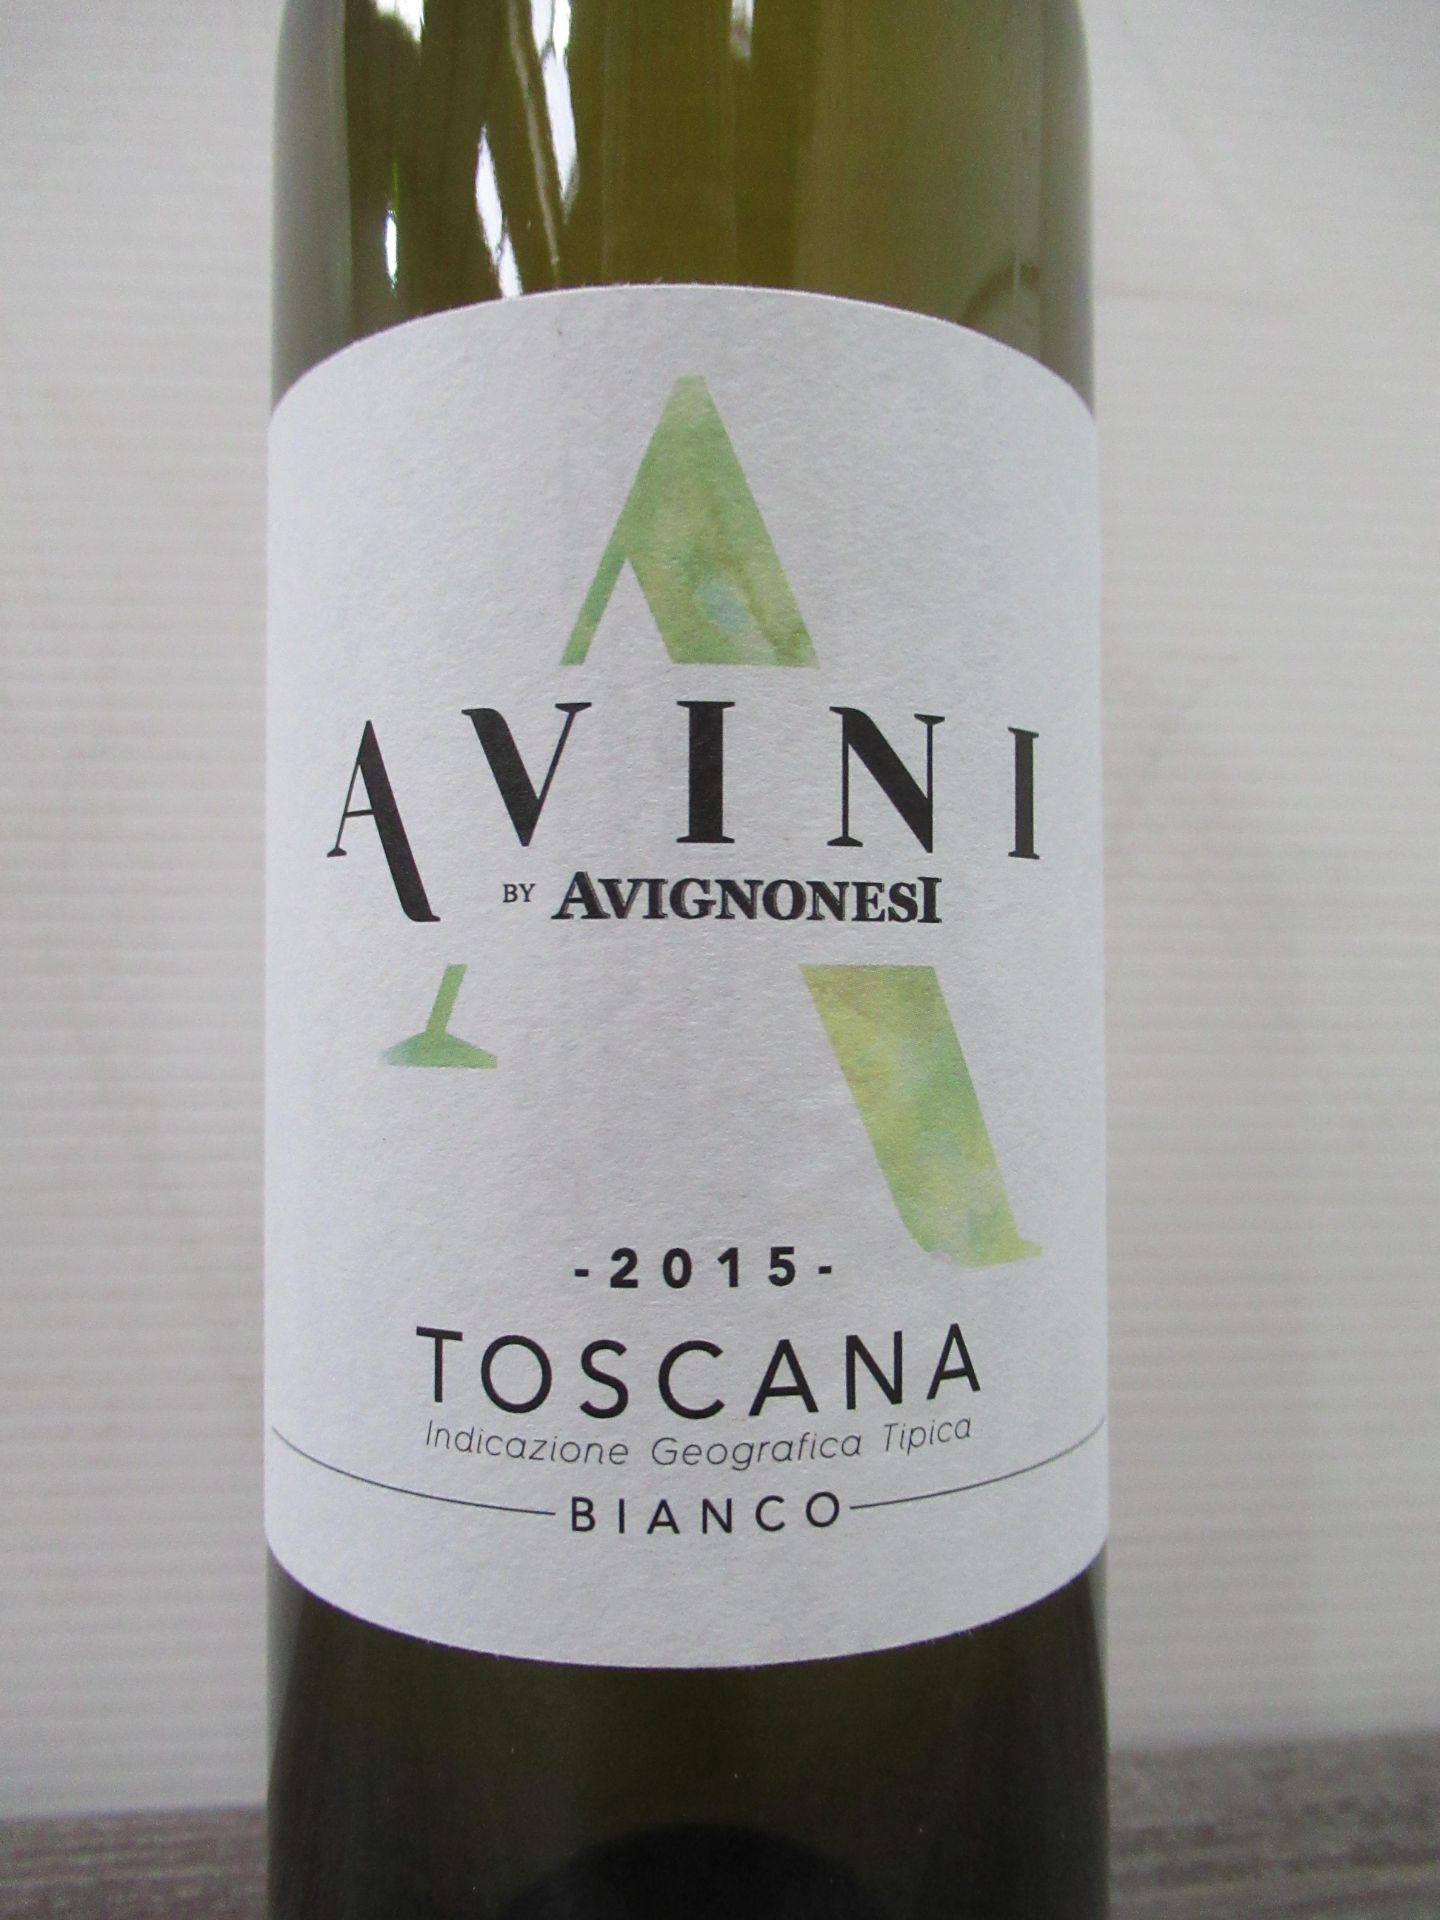 36 x Bottles "3 Cases" of Avini Avignonesi Toscana Bianco 2015 - Image 2 of 4